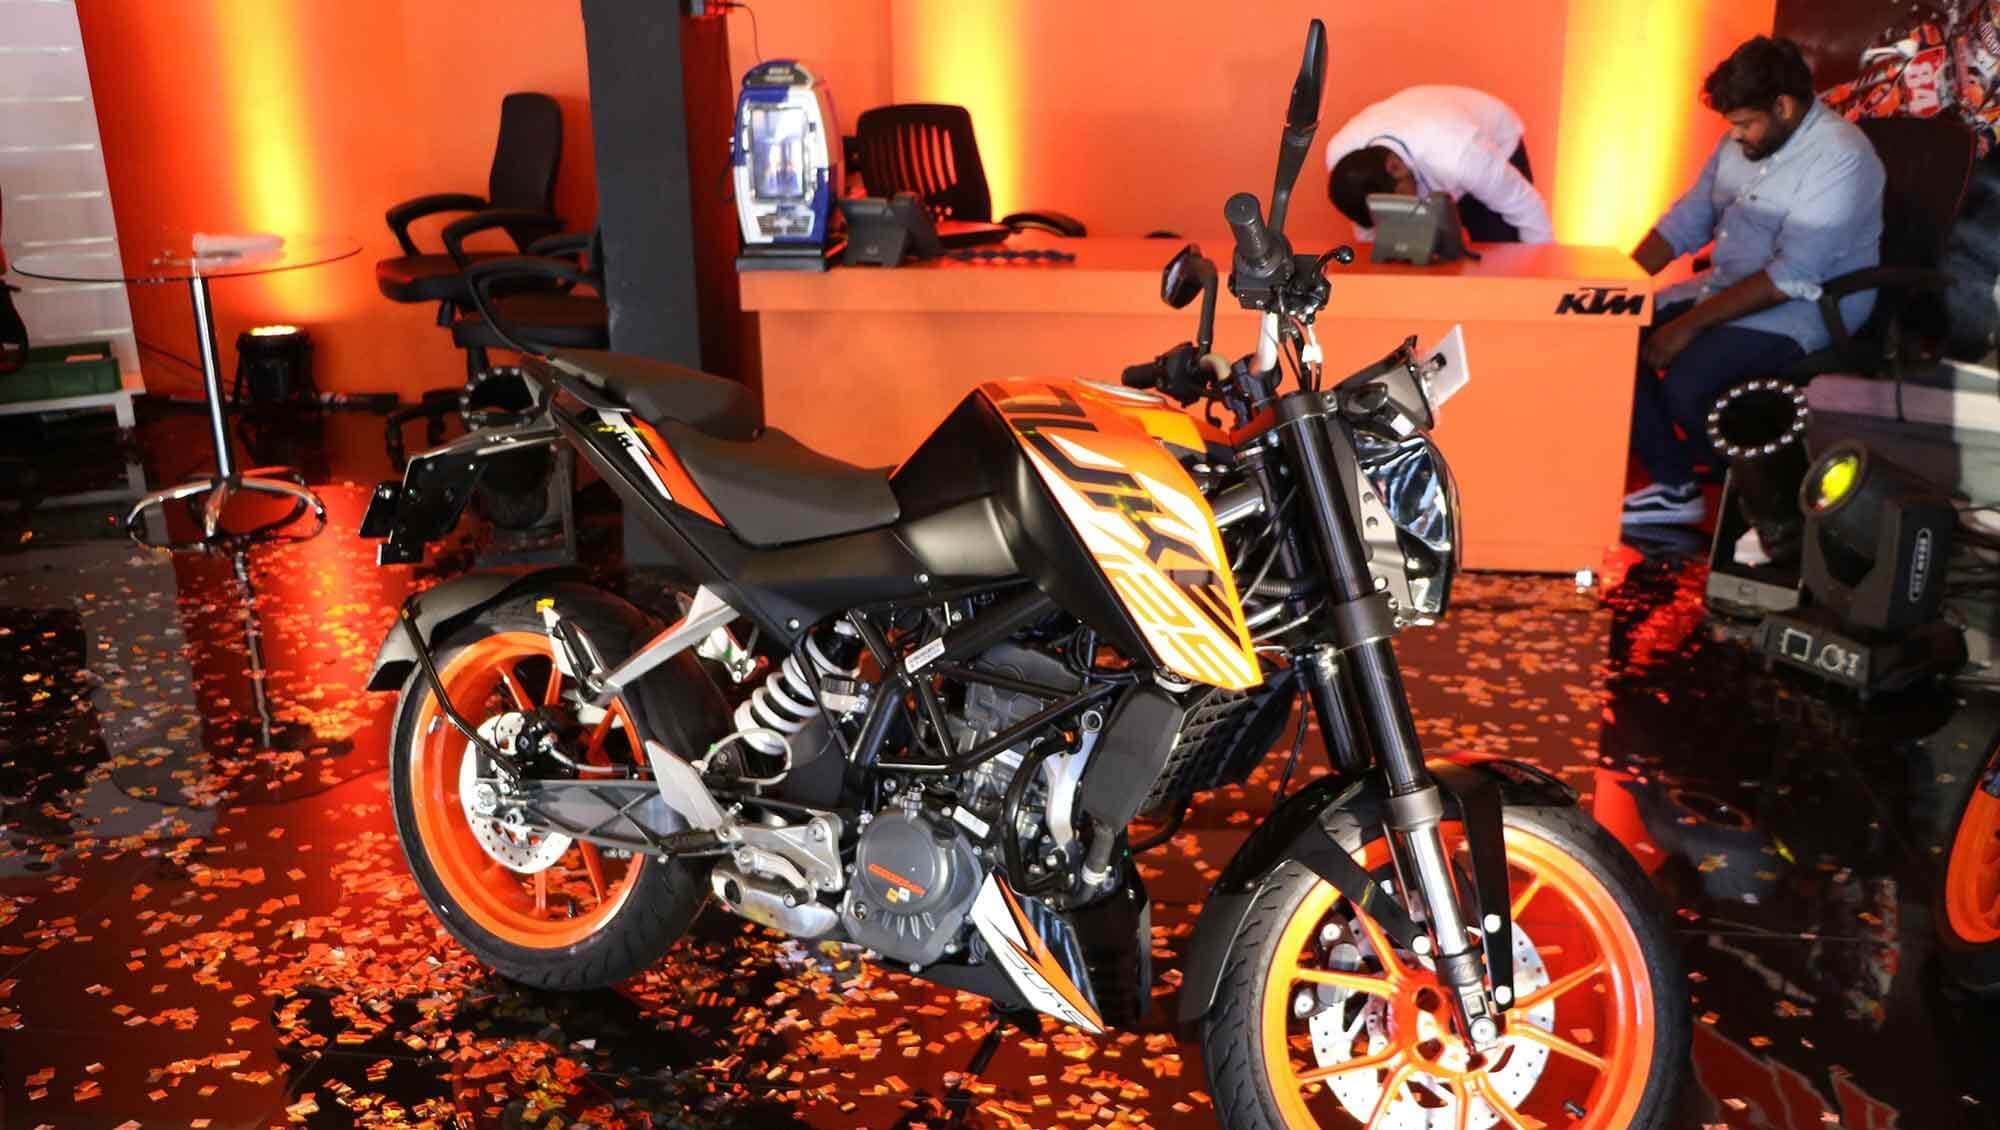 Un evento de exhibición para presentar una nueva motocicleta al mercado.